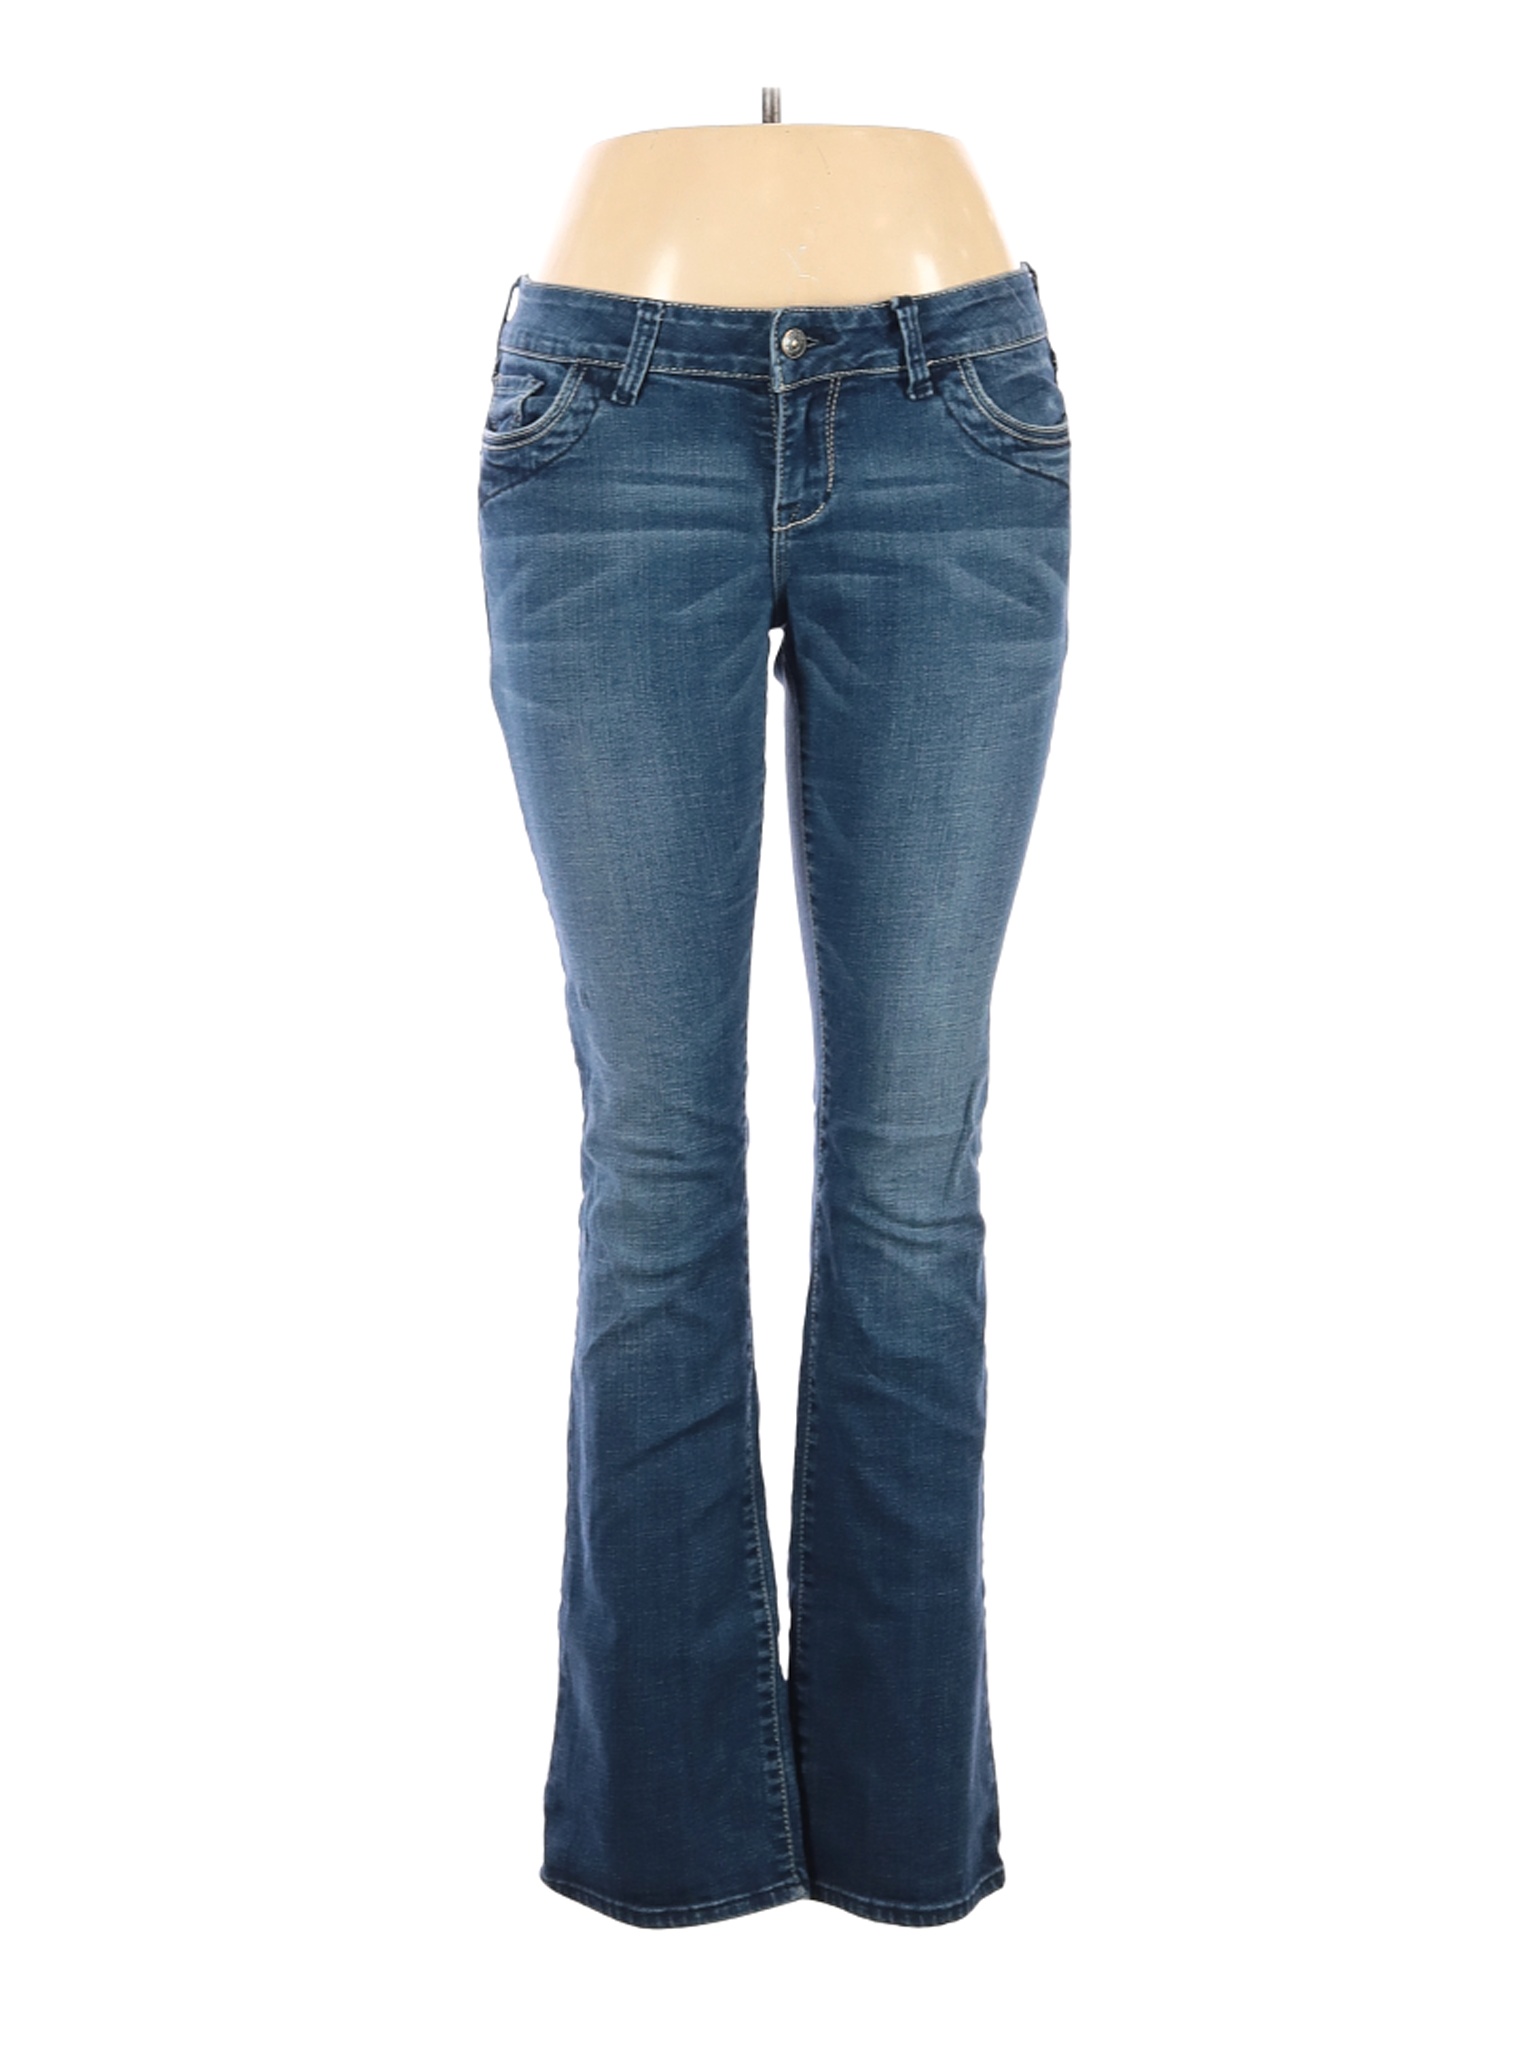 Delia's Women Blue Jeans 10 | eBay